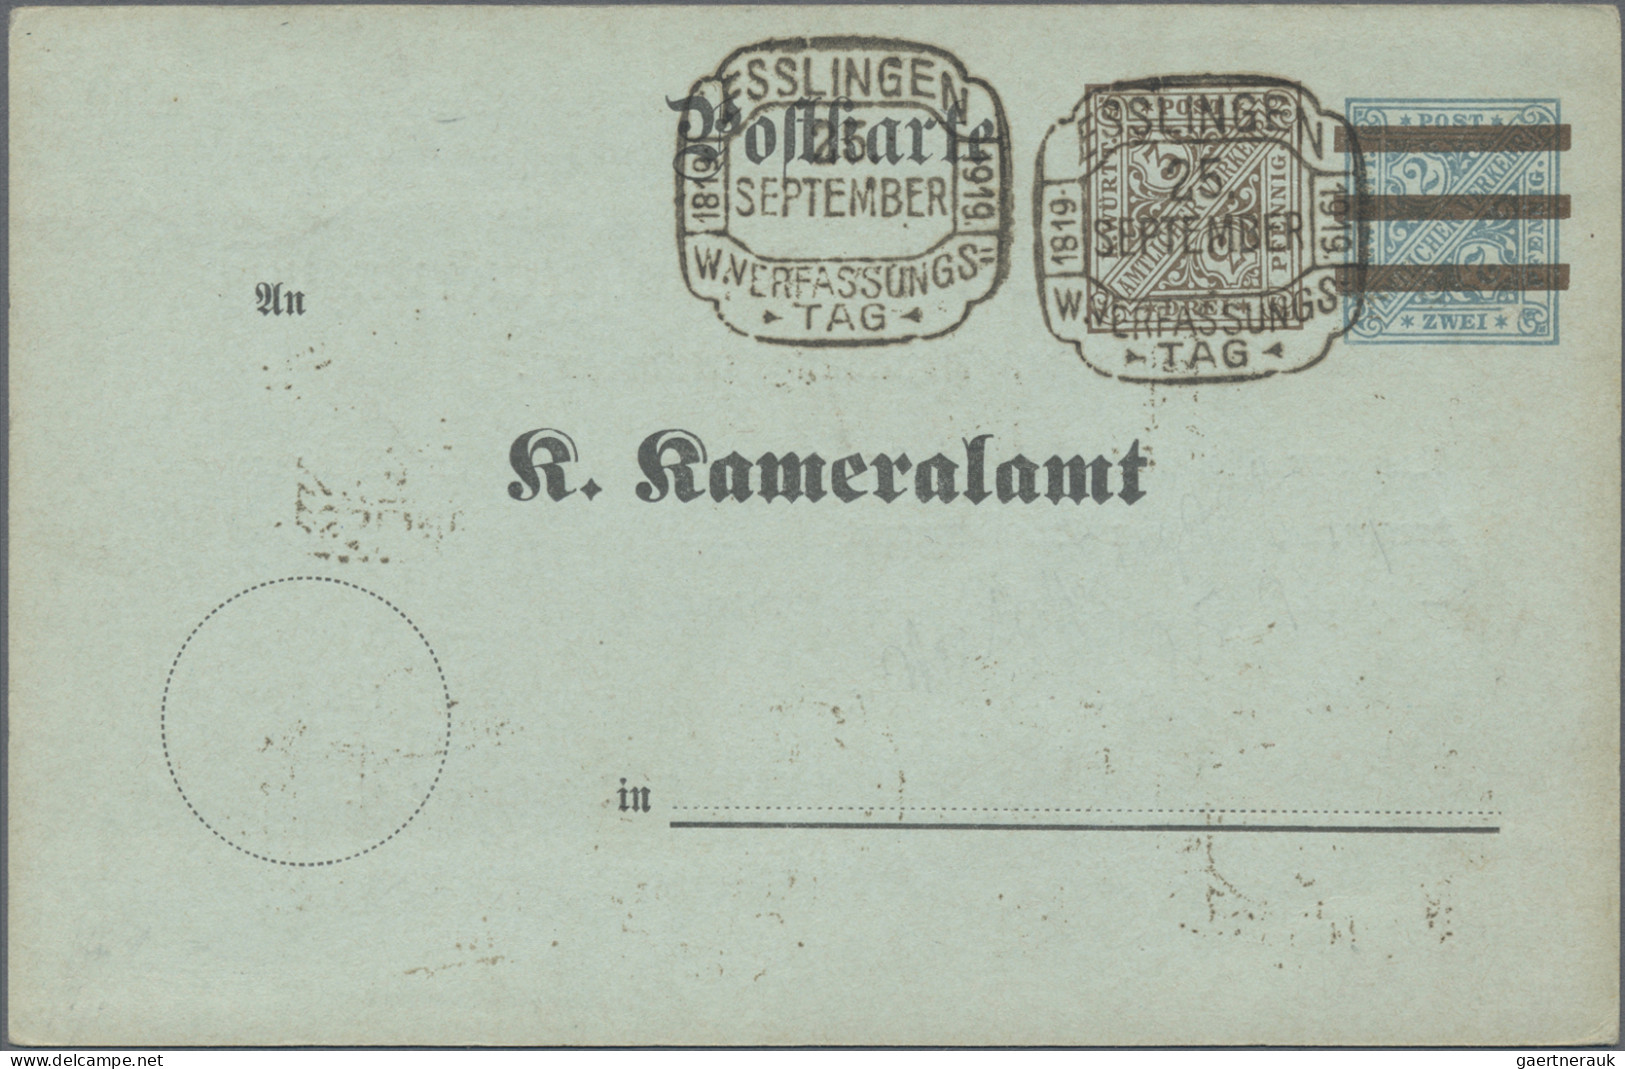 Württemberg - Ganzsachen: 1890/1910 (ca.), Partie von 20 gebrauchten und ungebra